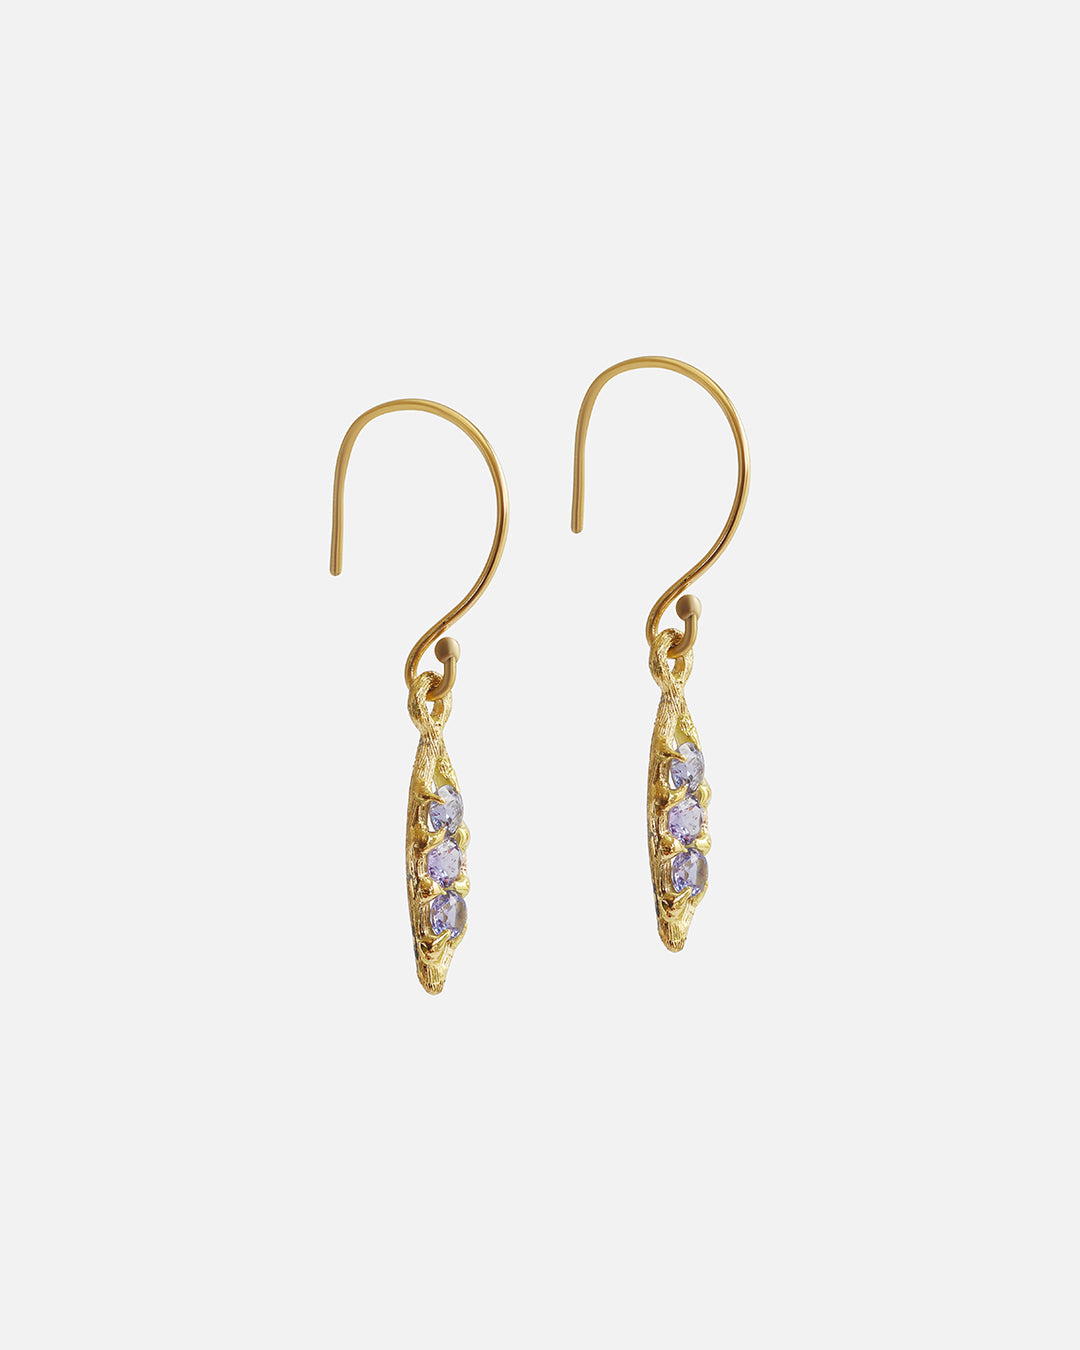 Silk / Purple Sapphire Earrings By Hiroyo in earrings Category